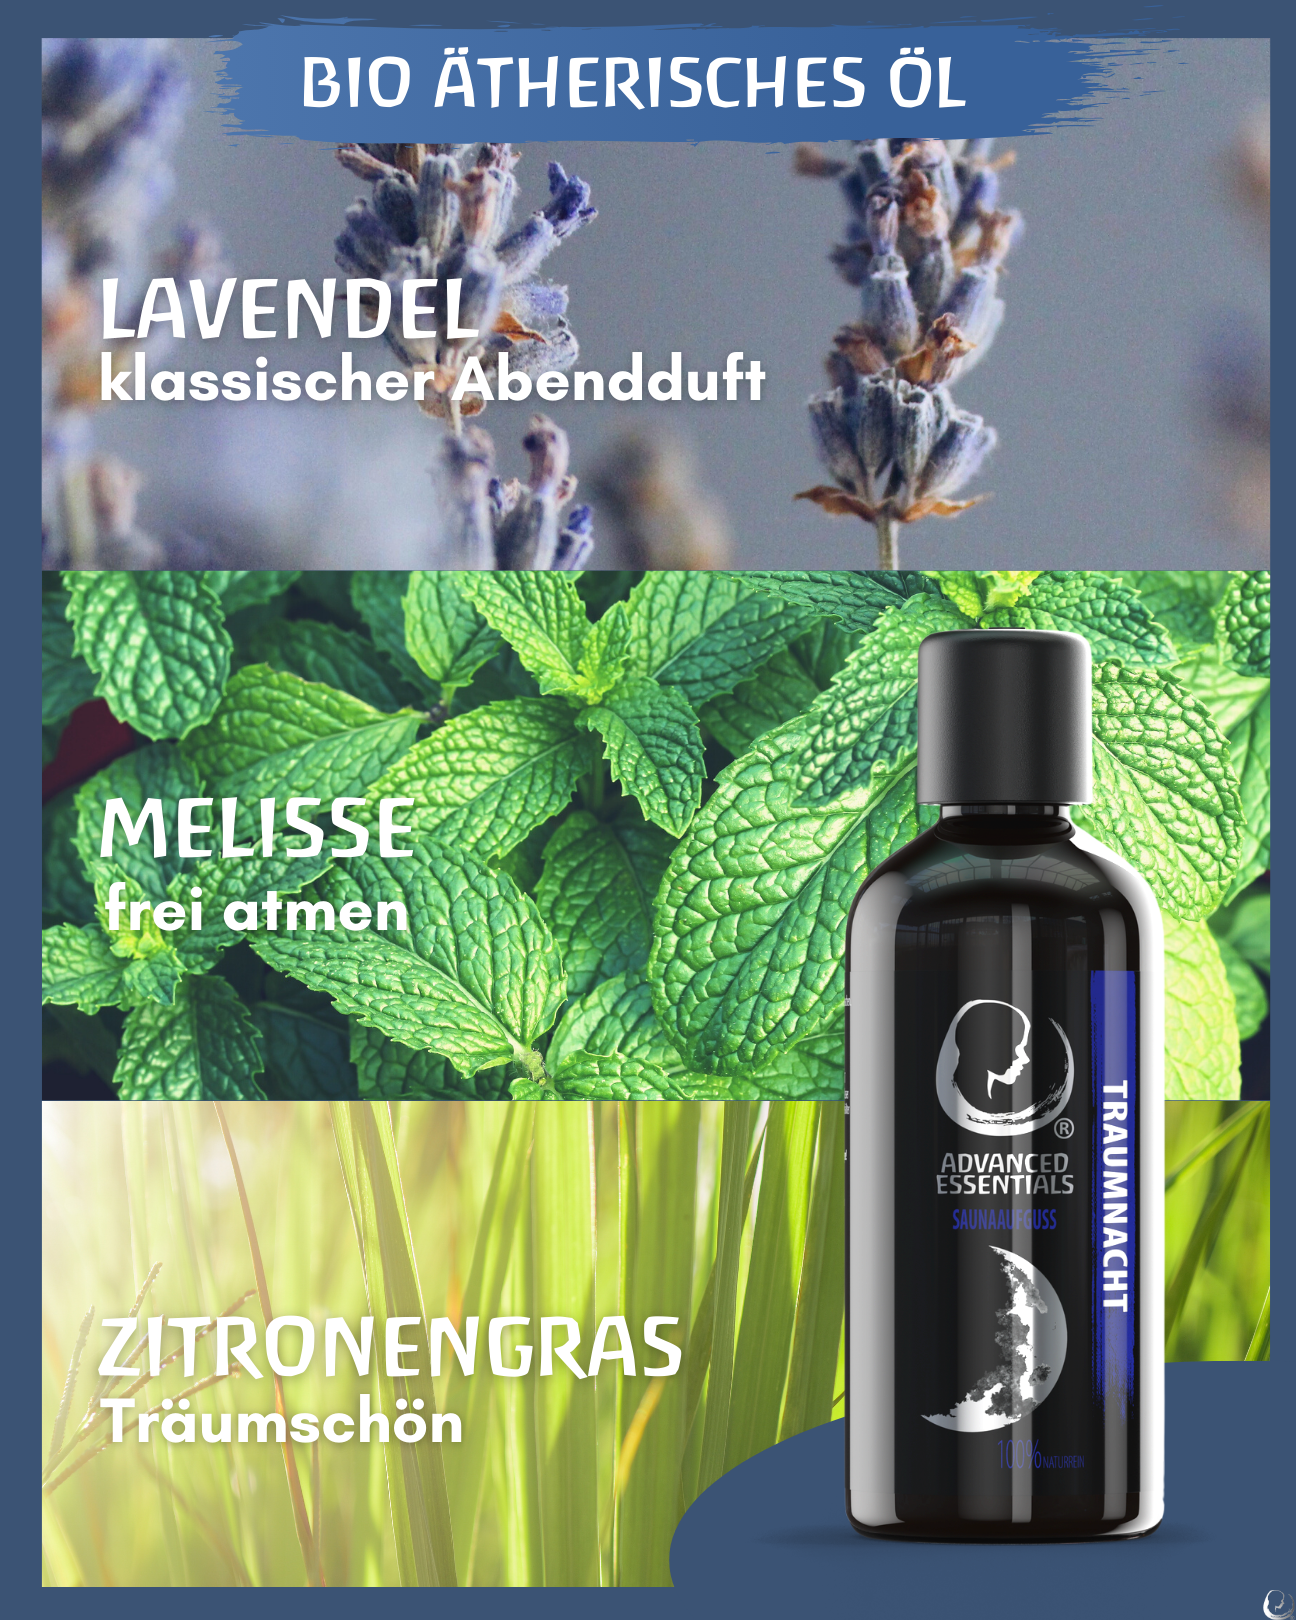 BIO Saunaaufguss Traumnacht (Lavendel/Bergamotte/Vanille) hochdosiertes ätherisches Öl (100ml)